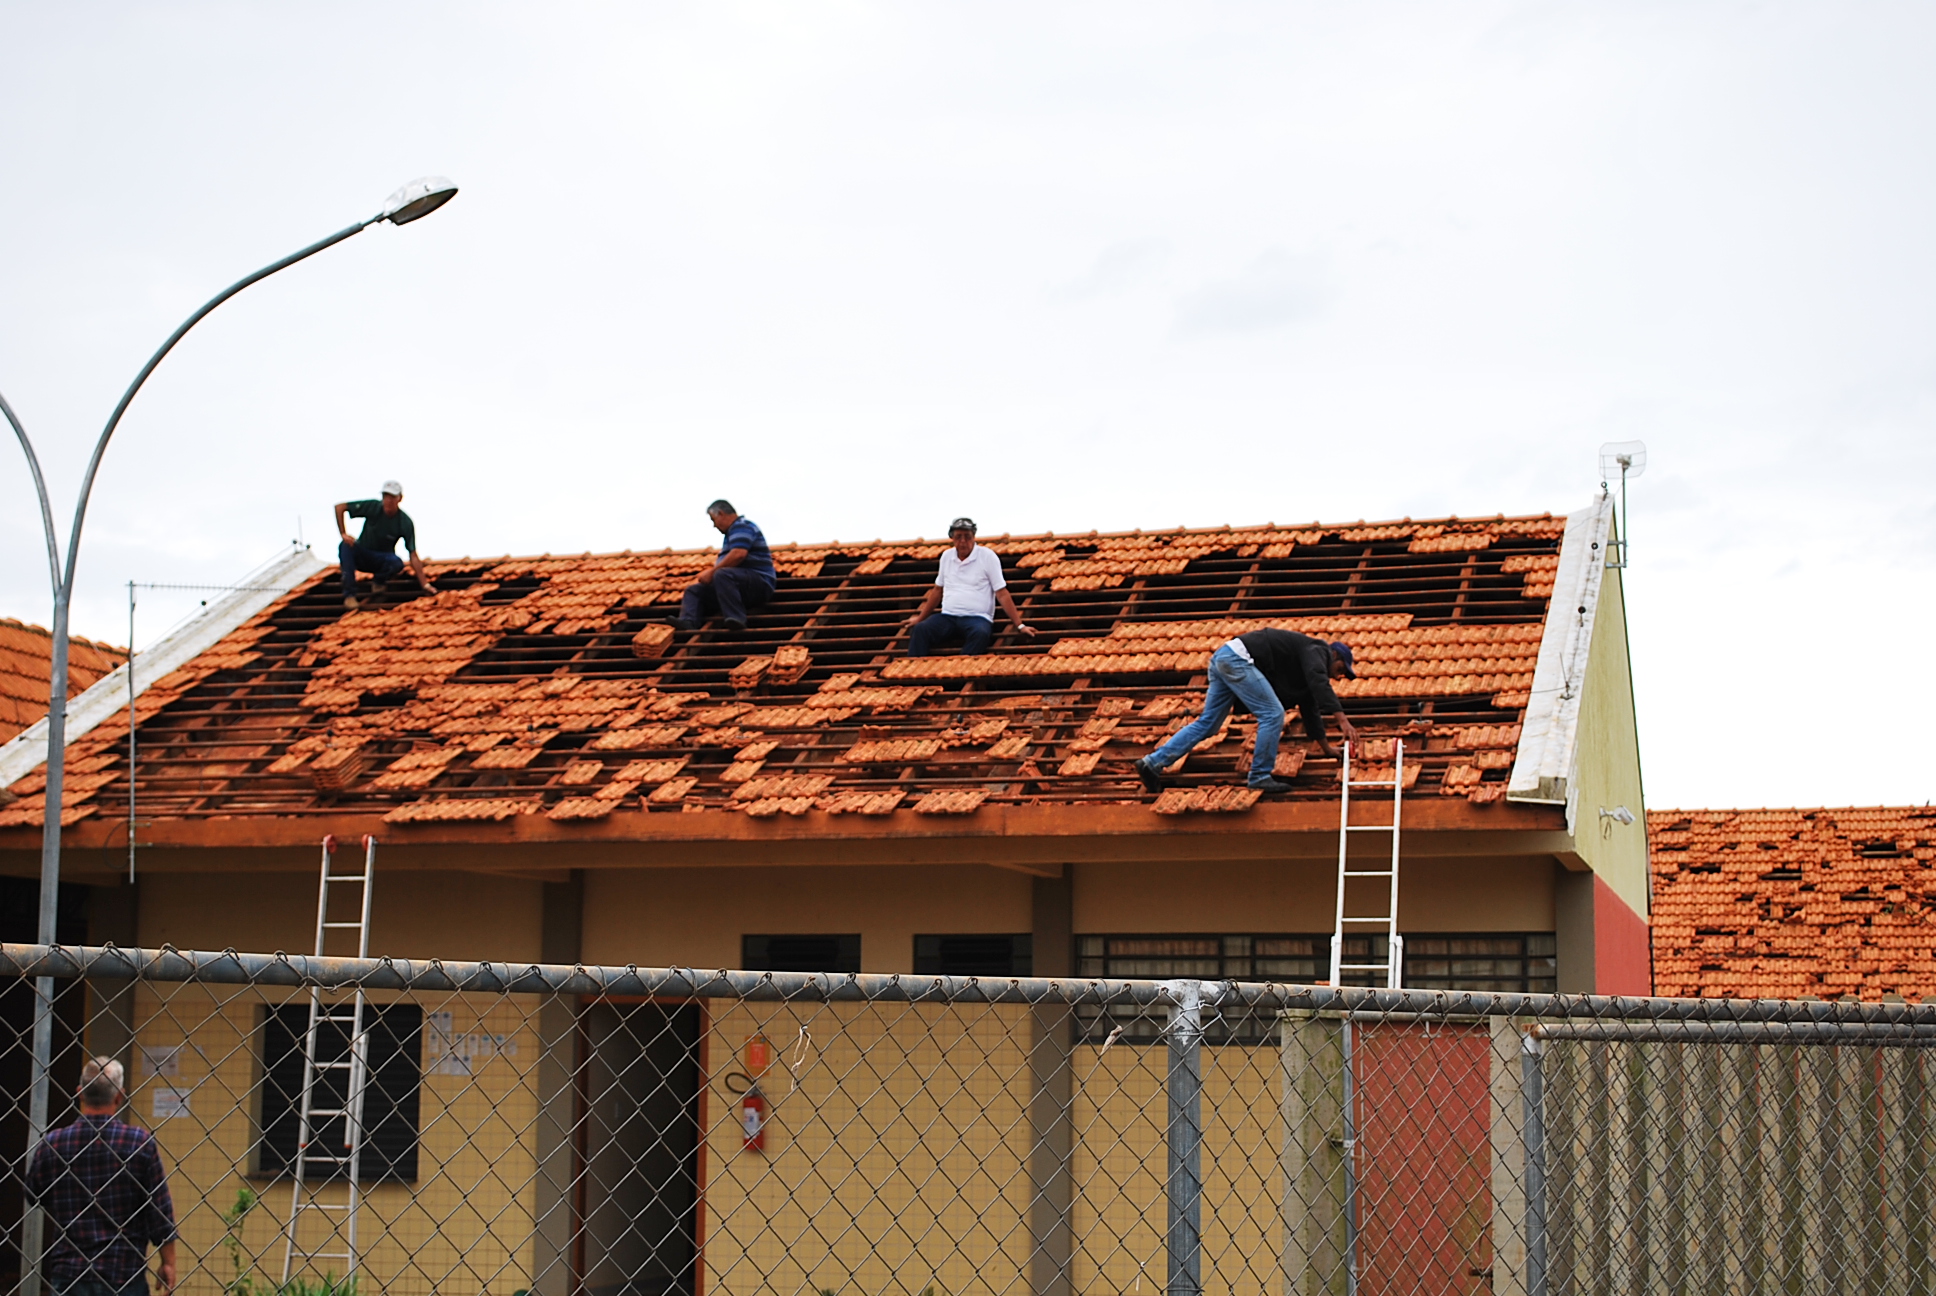 Em situações de tempestade, vendavais e granizo, quando o telhado da residência for danificado, os moradores tendem a subir até o local para realizar o conserto - Foto: Divulgação/imagem ilustrativa